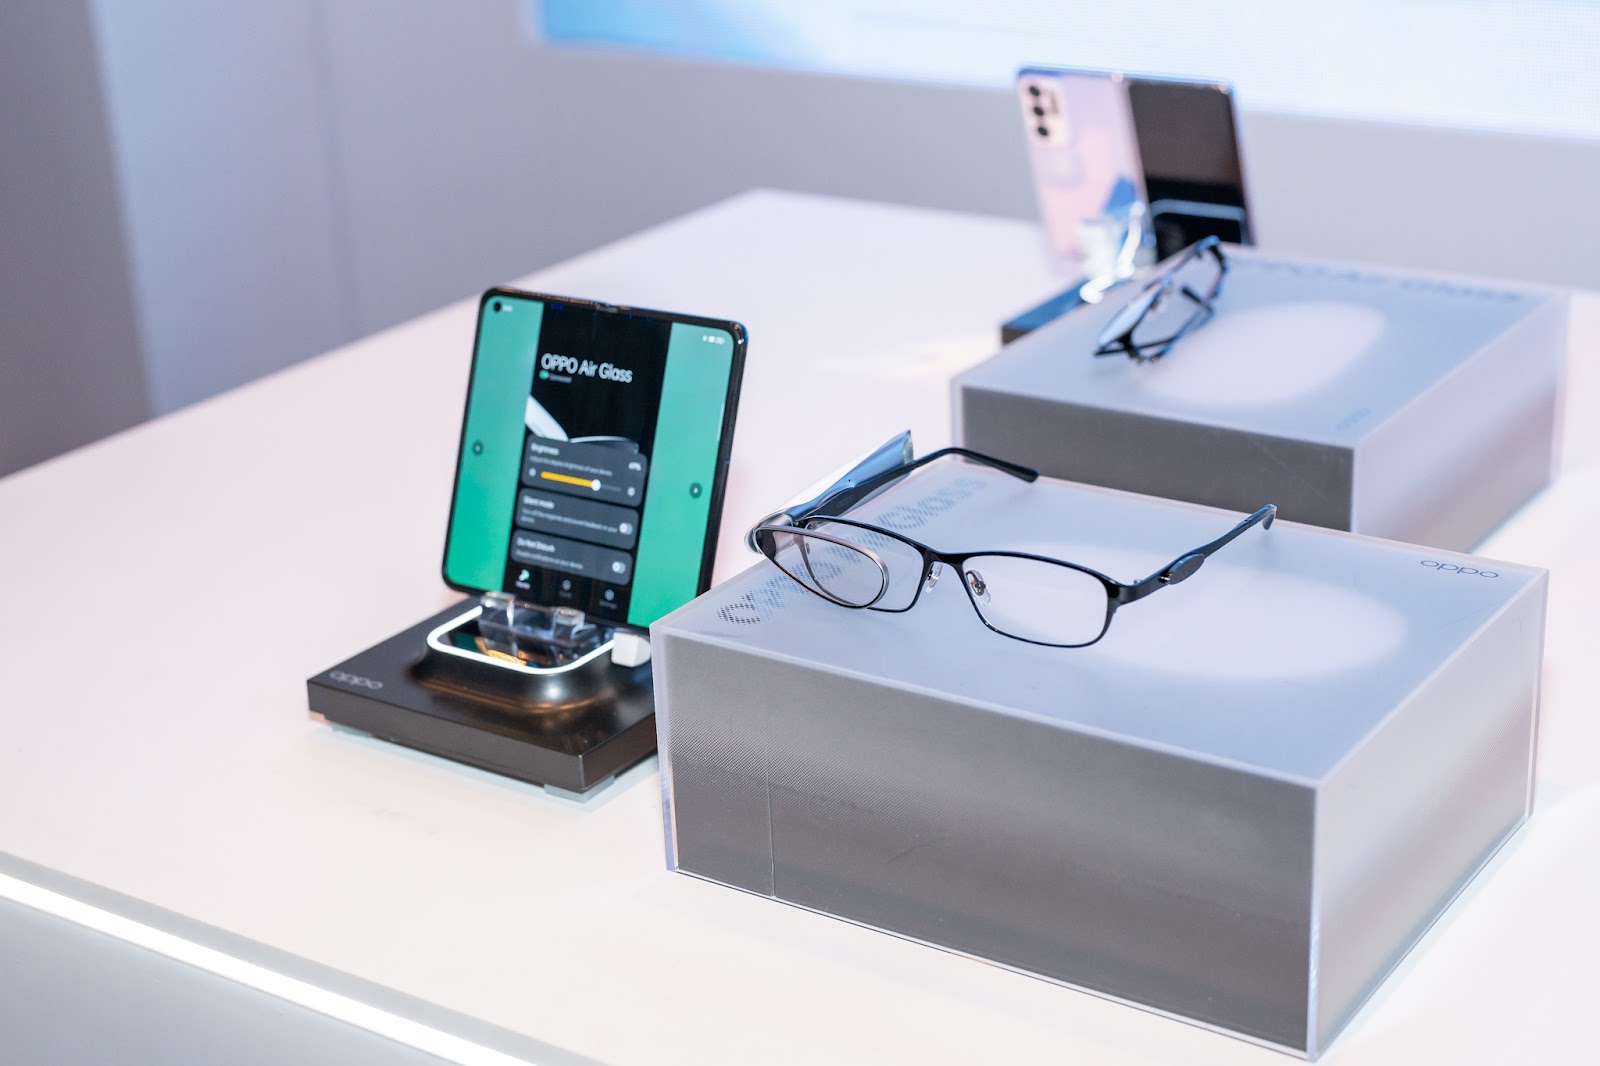 Trải nghiệm kính Oppo Air Glass: Khi Oppo đi trước Apple một bước - Ảnh 10.